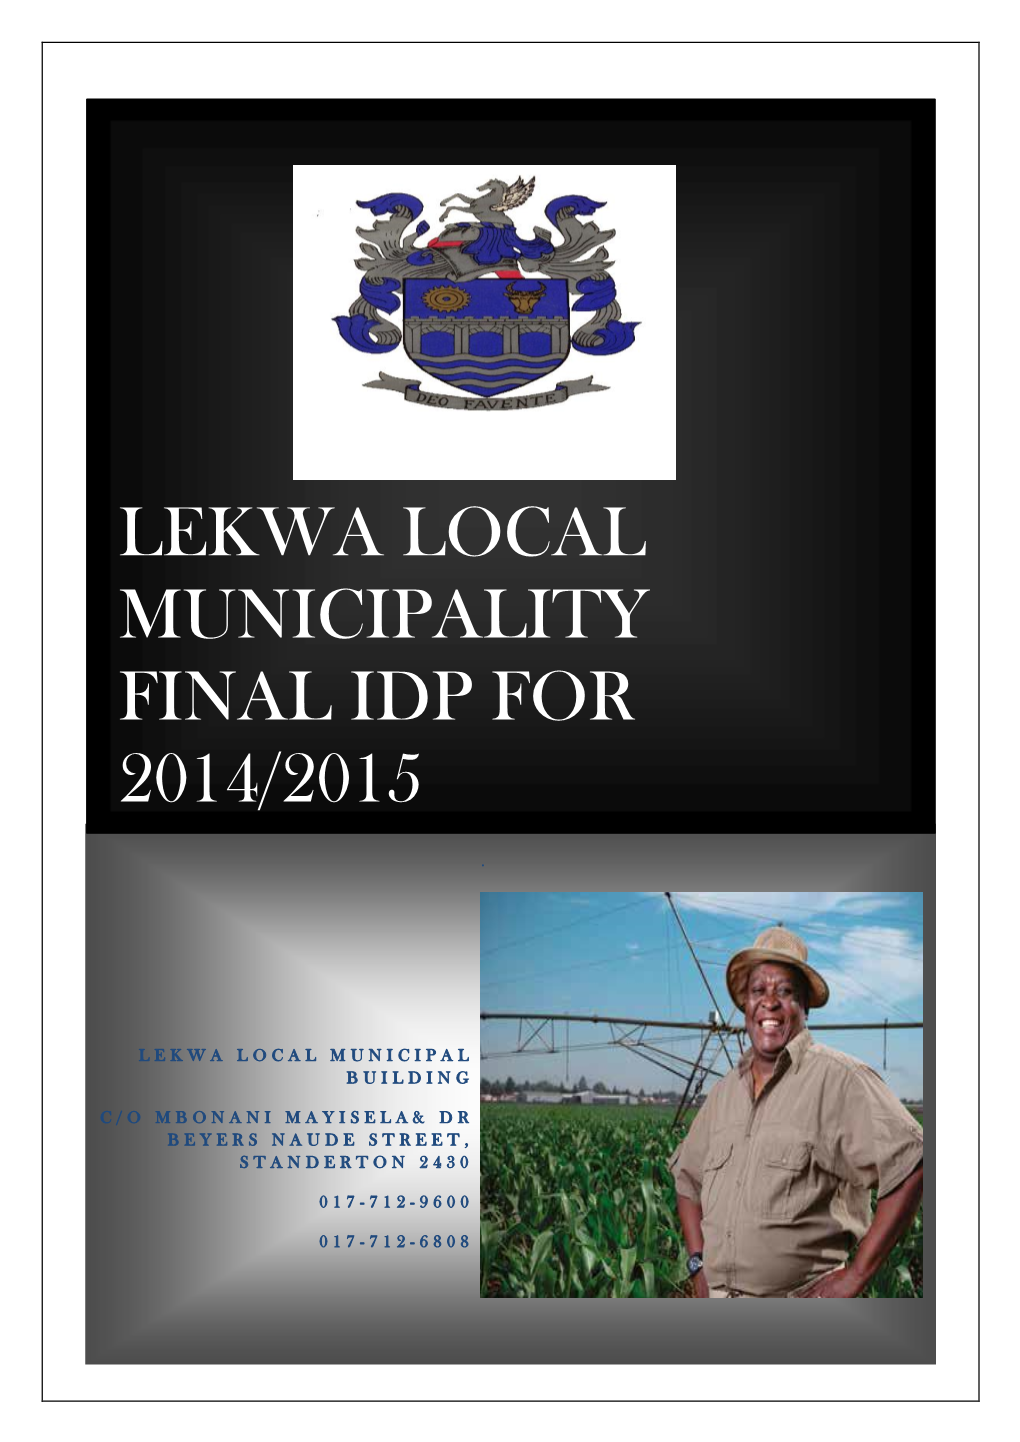 Lekwa Local Municipality Final Idp for 2014/2015